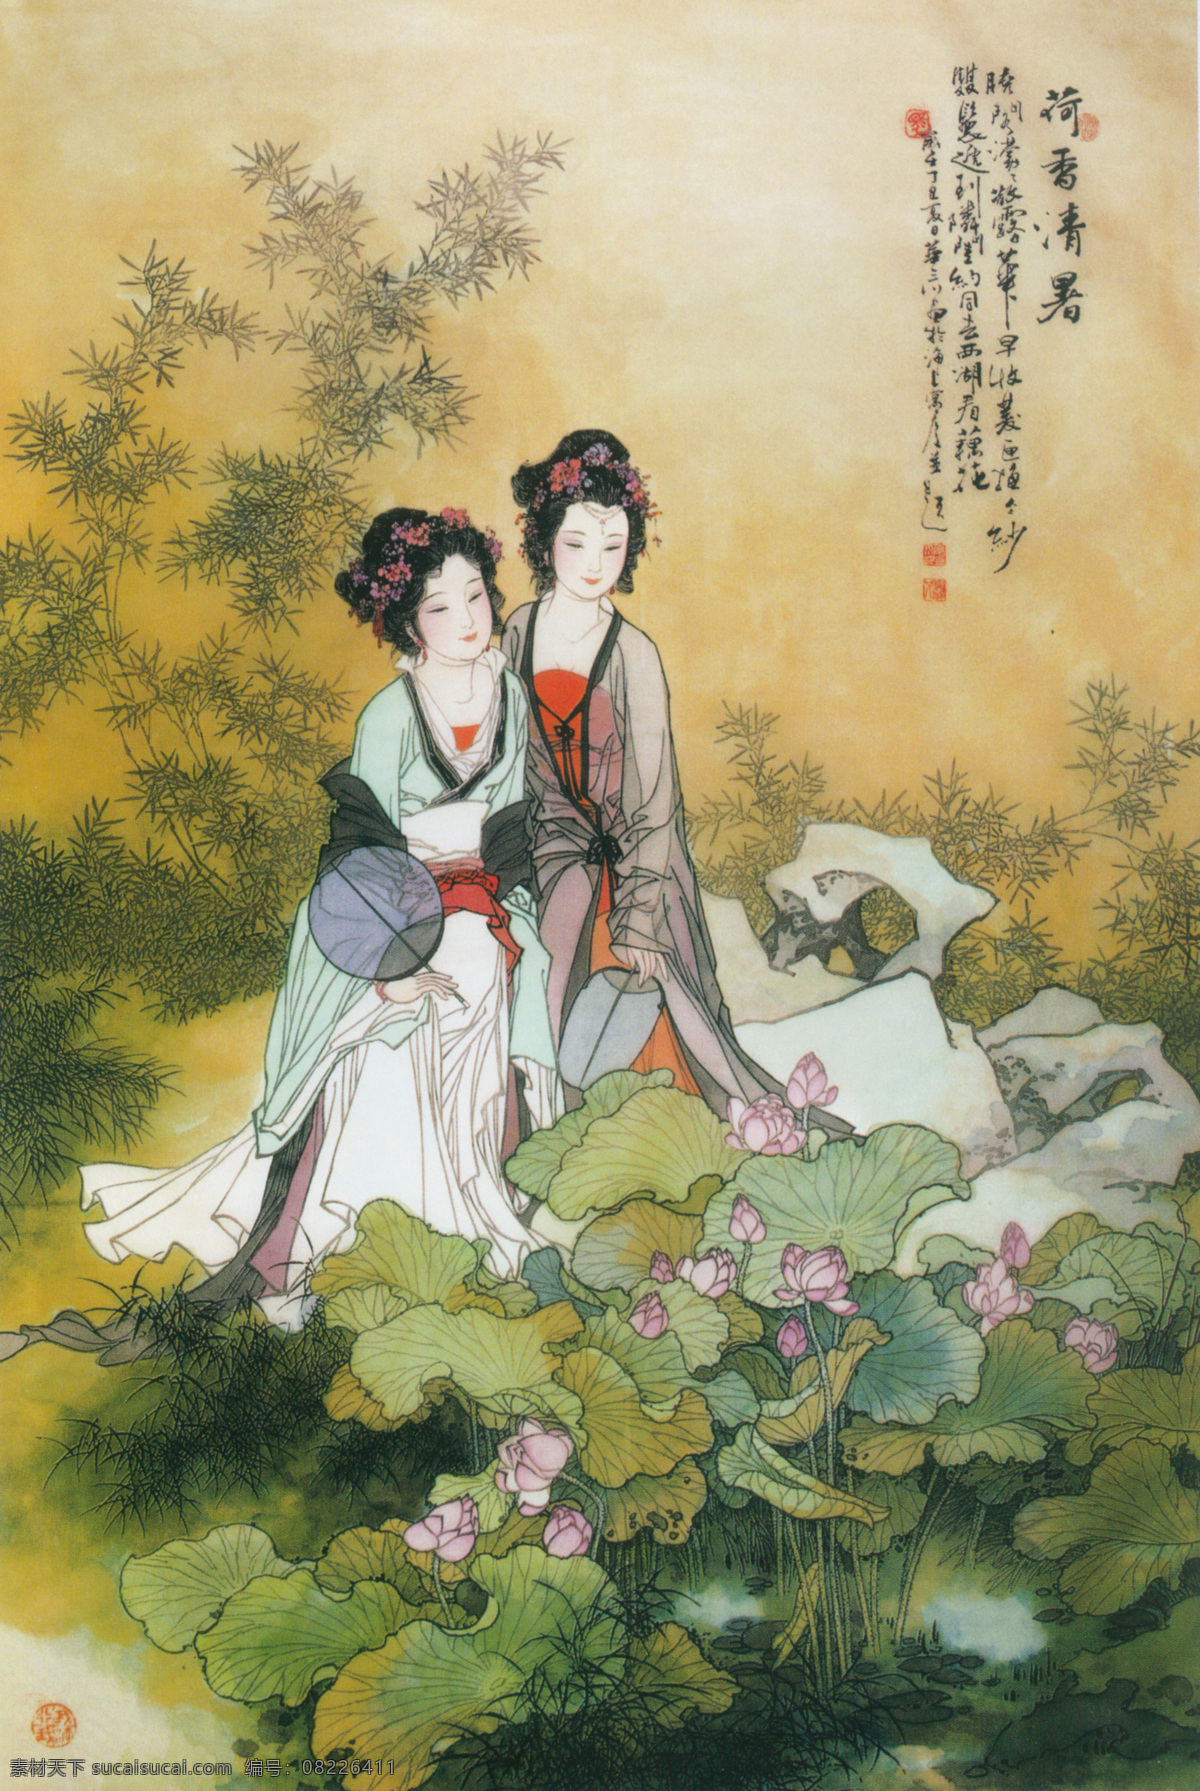 荷 香 清 暑 荷香清暑 华三川 1977年 绢本设色 126cm x 84cm 私人藏 文化艺术